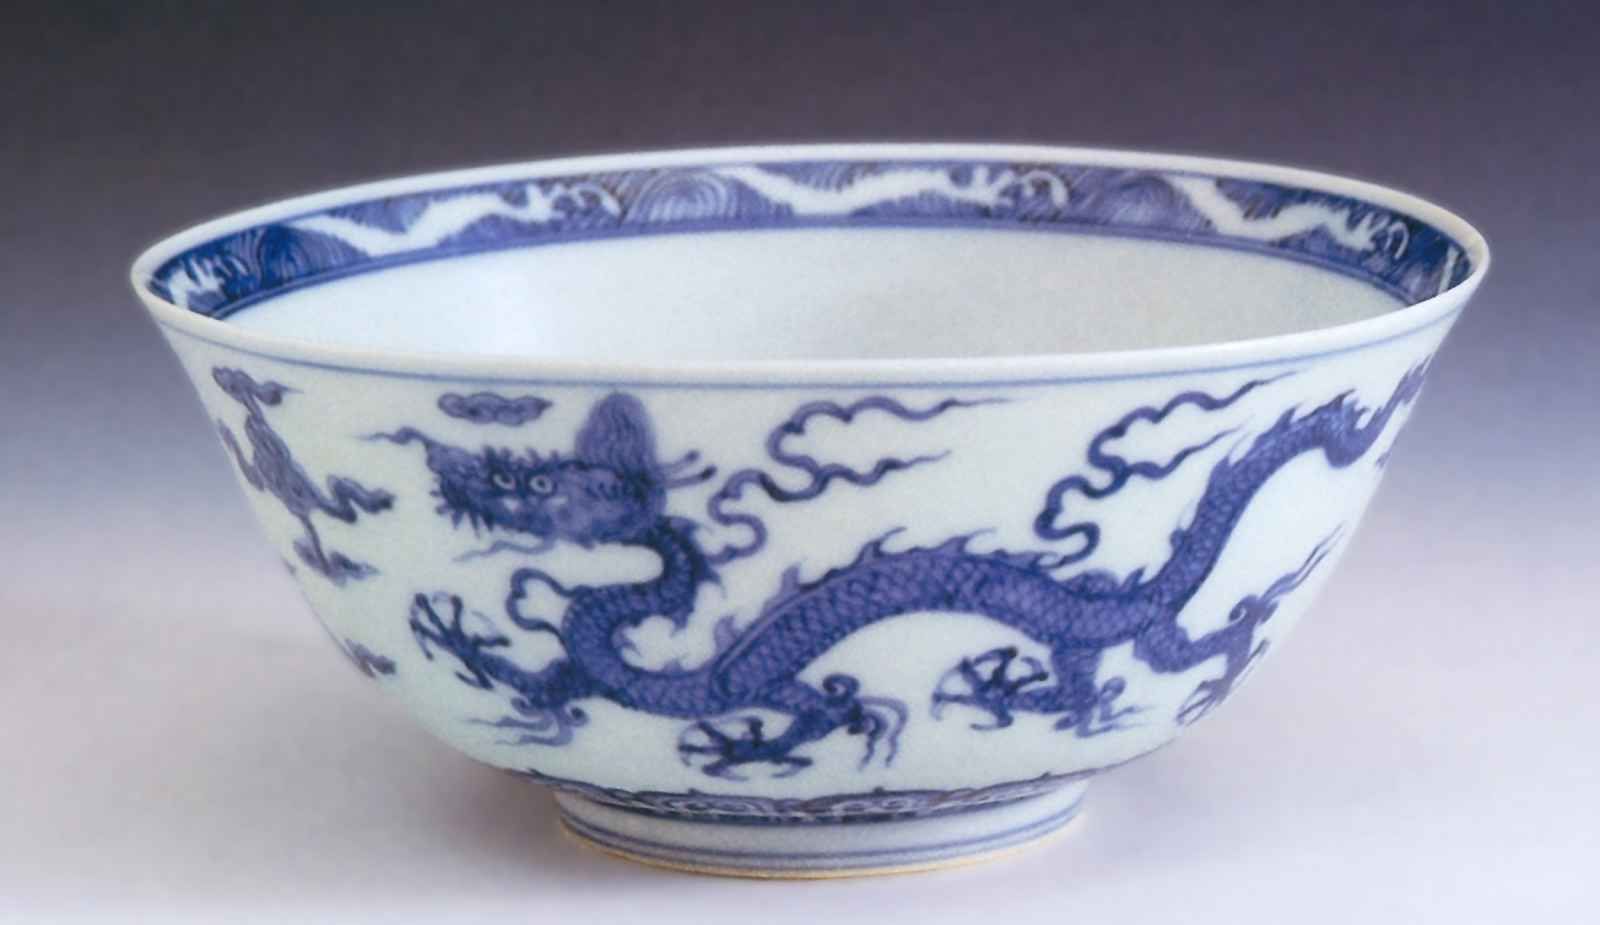 Чаша с изображением драконов в облаках <br>Конец 15 - начало 16 века <br>Фарфор, глазурь <br>Шанхай, Городской музей 